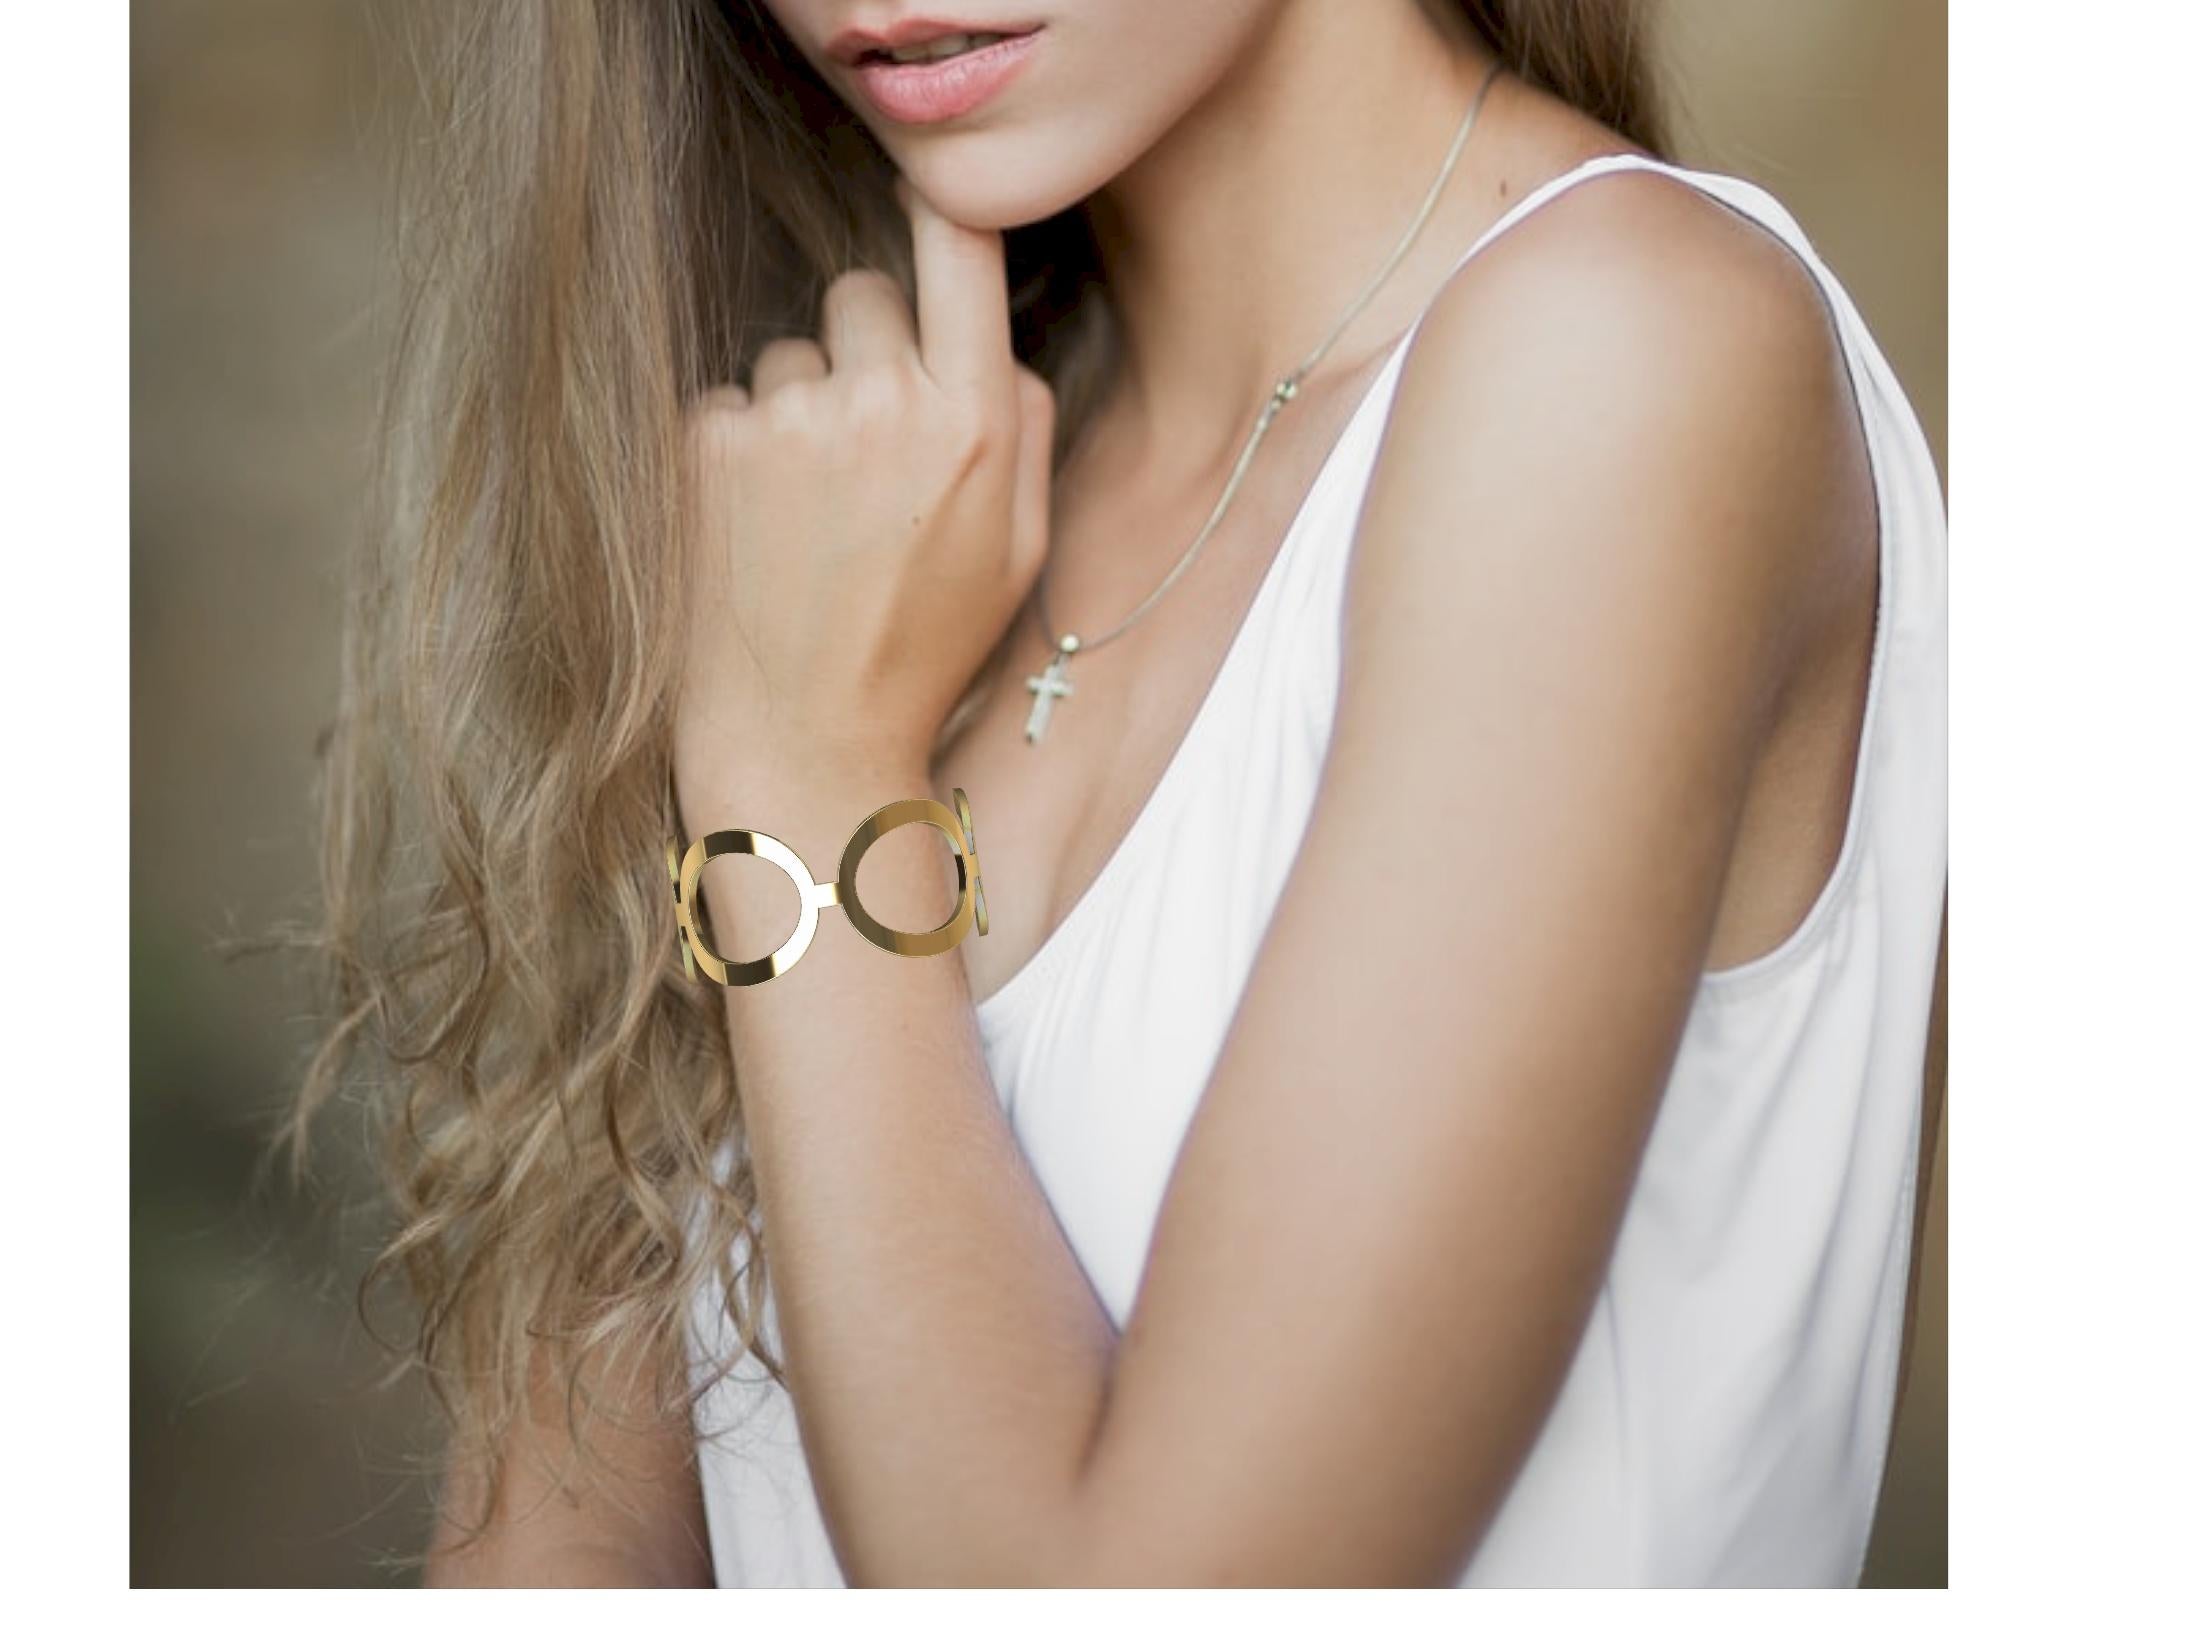 Le designer de Tiffany, Thomas Kurilla, a créé ce bracelet manchette ovale en or jaune 18 carats, d'une épaisseur de 4 x 1,4 mm et d'une largeur de 29 mm. J'ai conçu et fabriqué cette manchette en argent pour Tiffany & Co. J'utilisais des formes